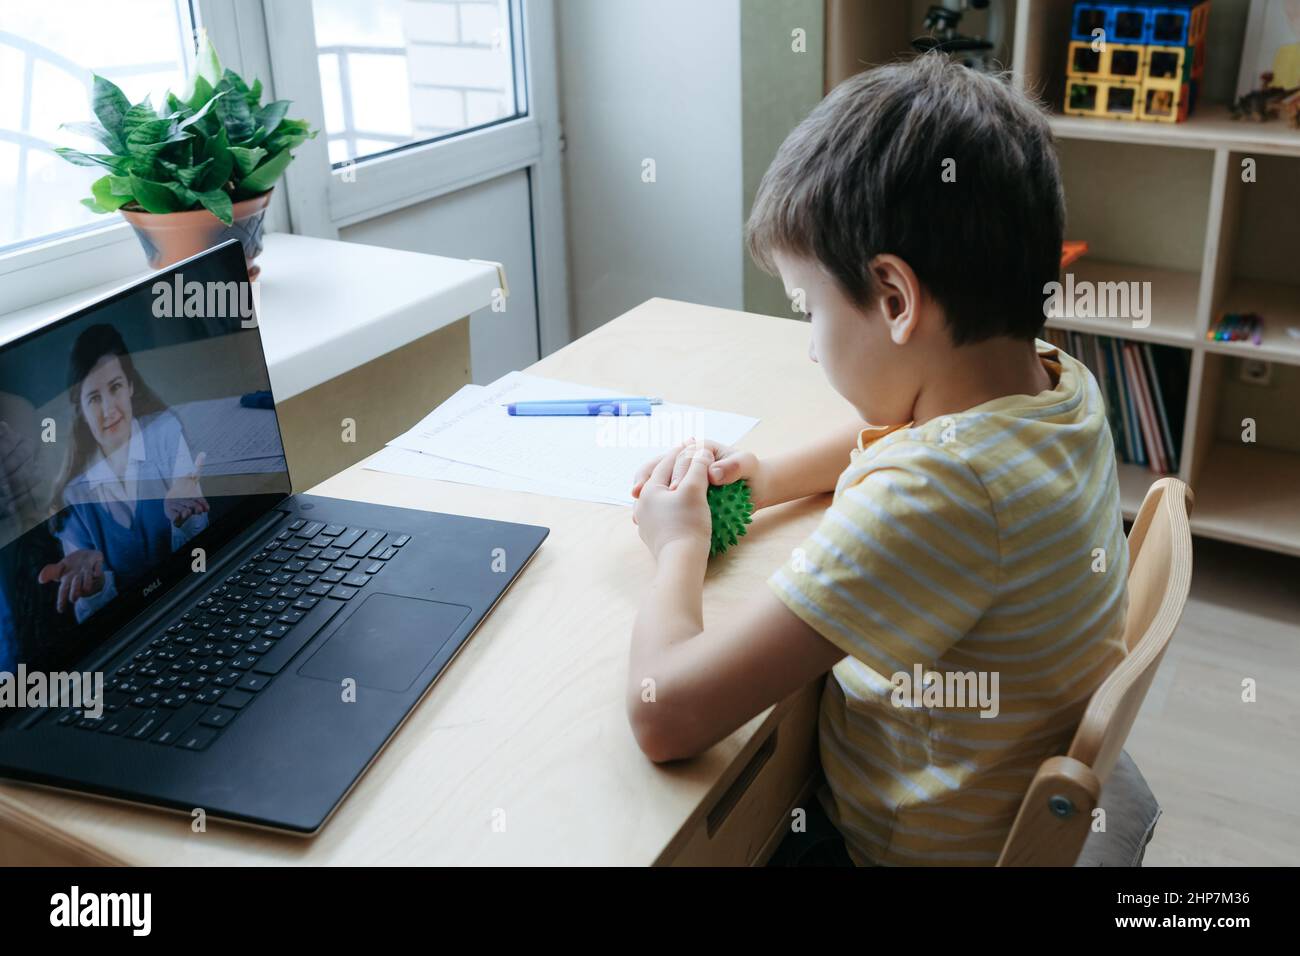 ragazzo di 8 anni seduto alla scrivania con computer portatile e fare esercizio con palla da massaggio Foto Stock